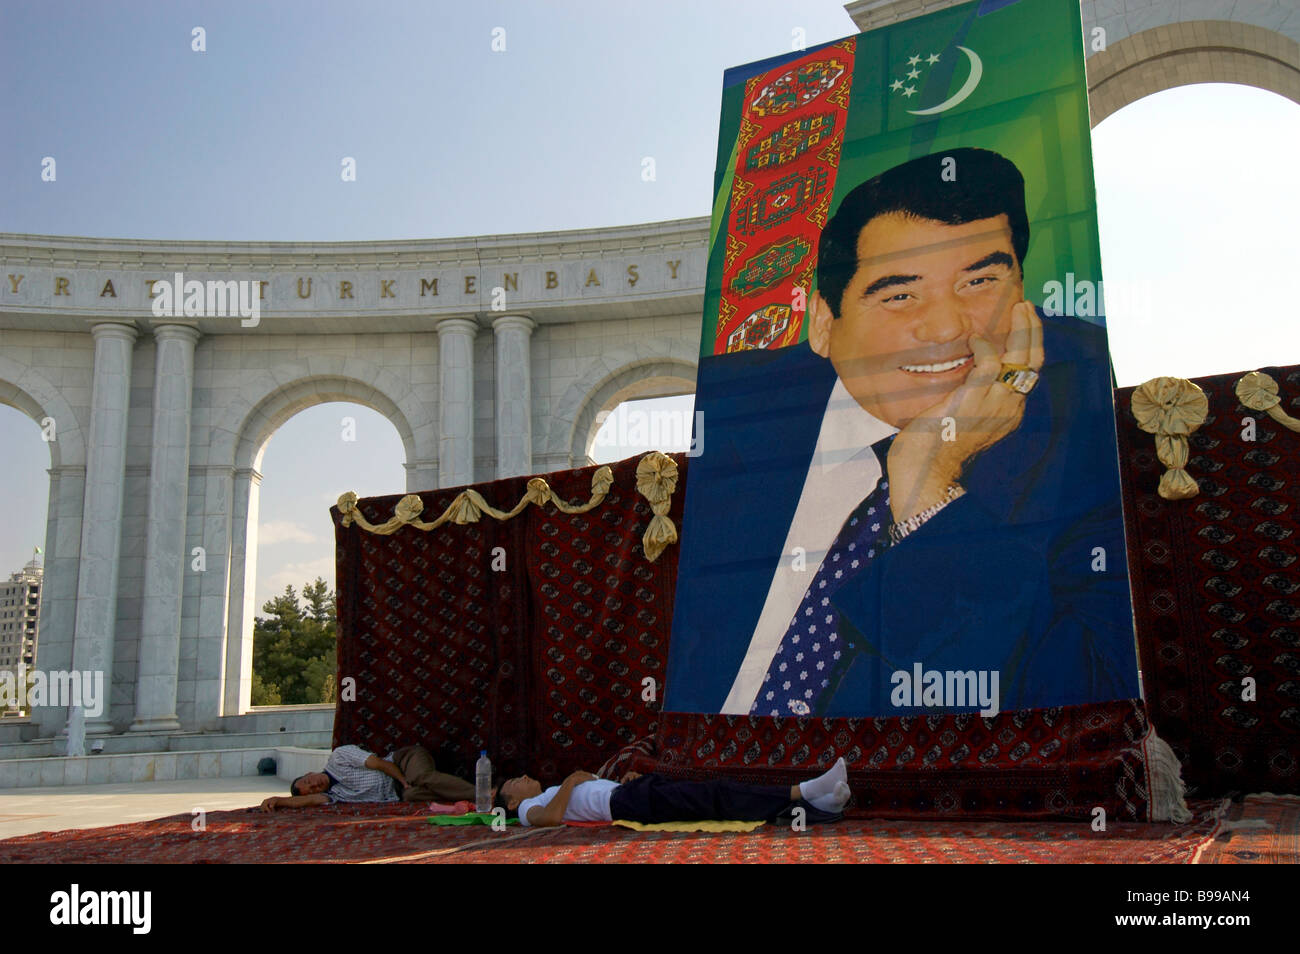 Statue de la personnalité culte Turkmenbashy Turkmenbashi Banque D'Images